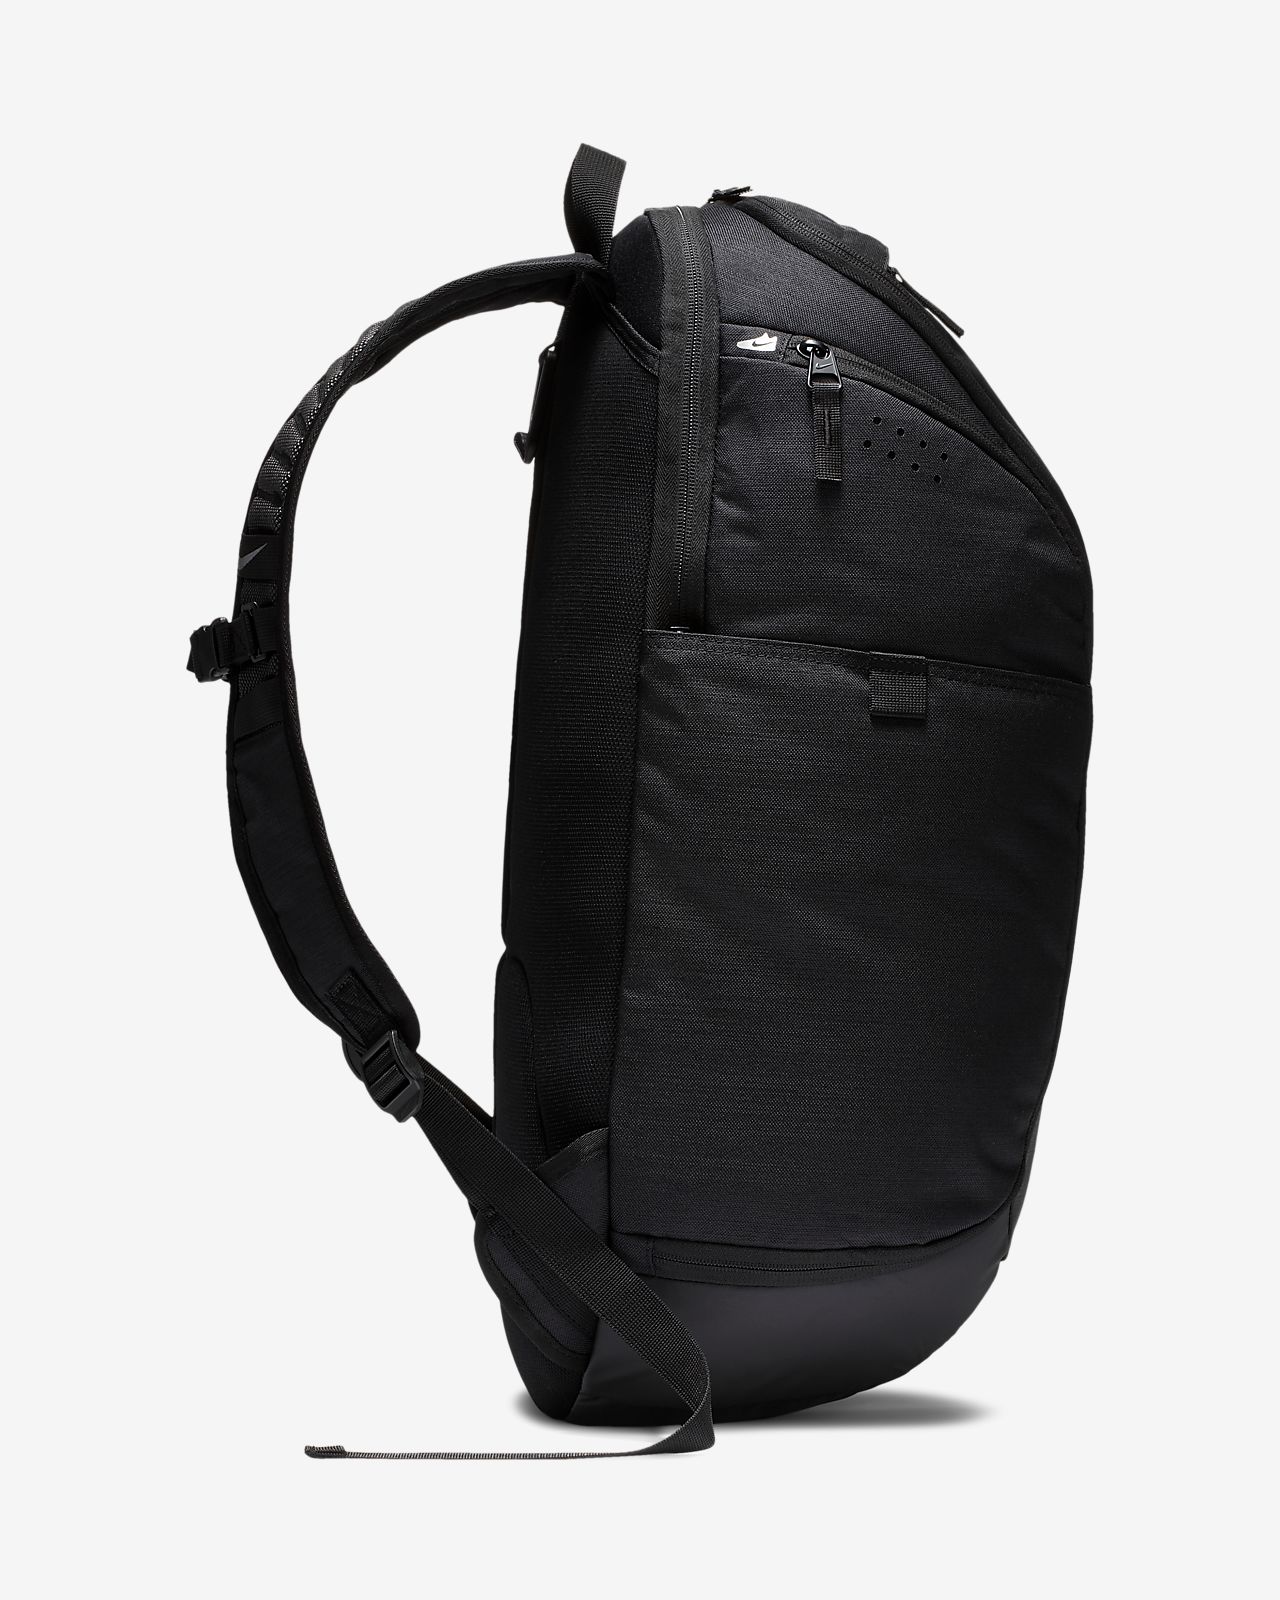 one strap nike backpack